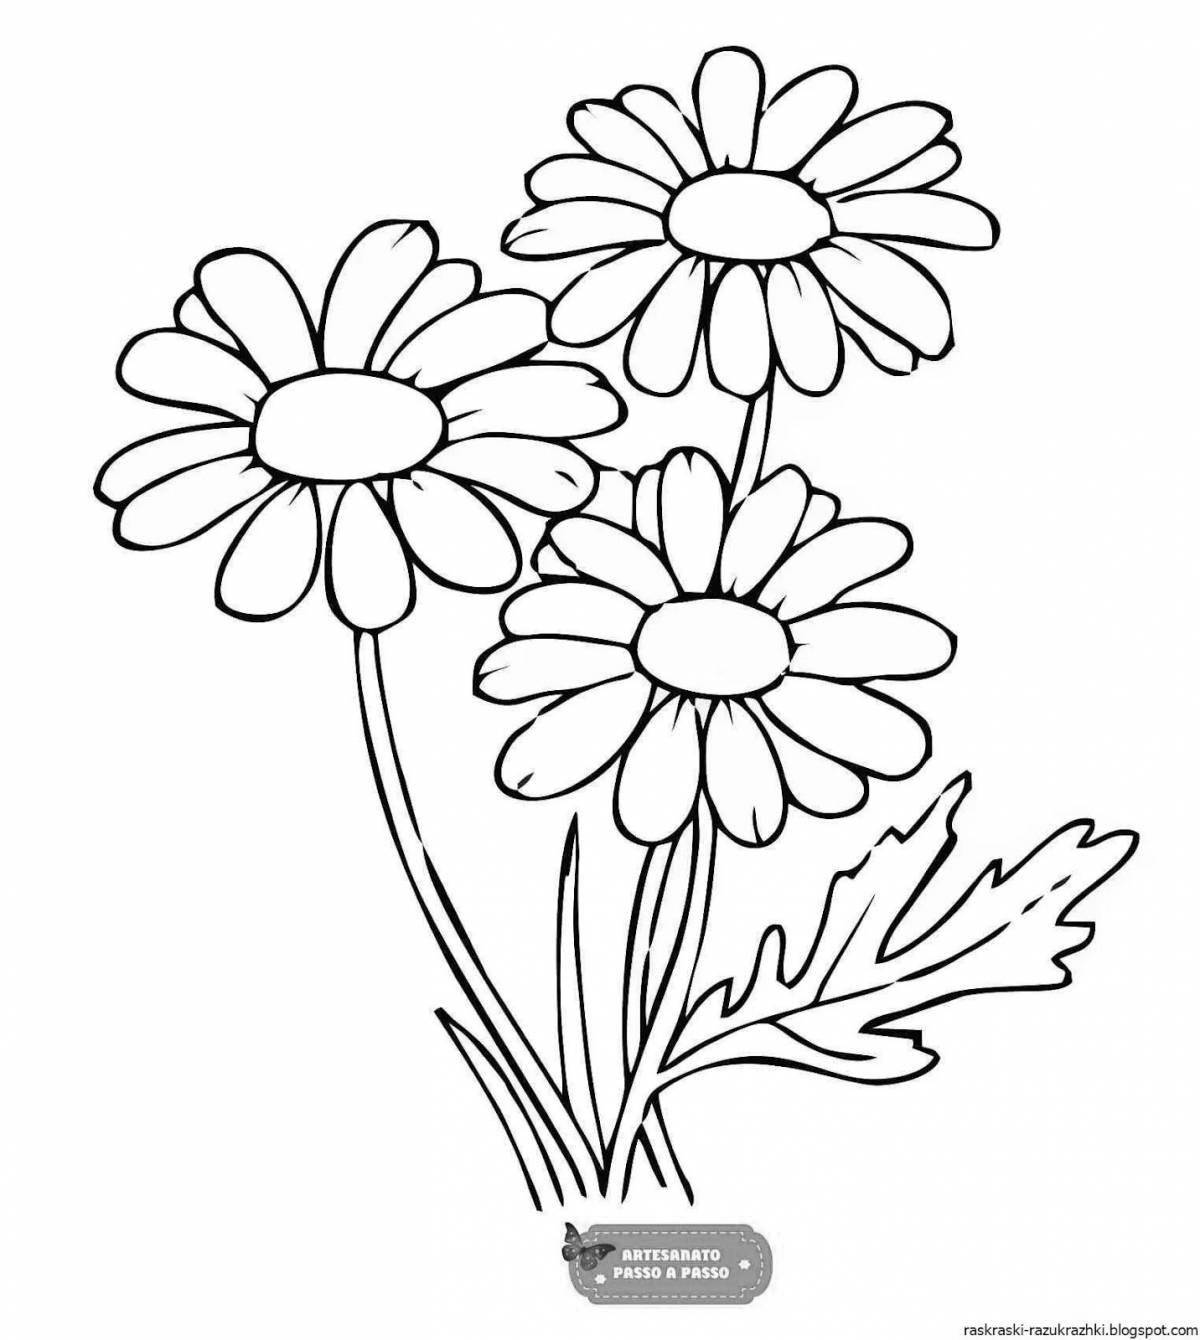 Идеальная страница раскраски цветка ромашки для юниоров